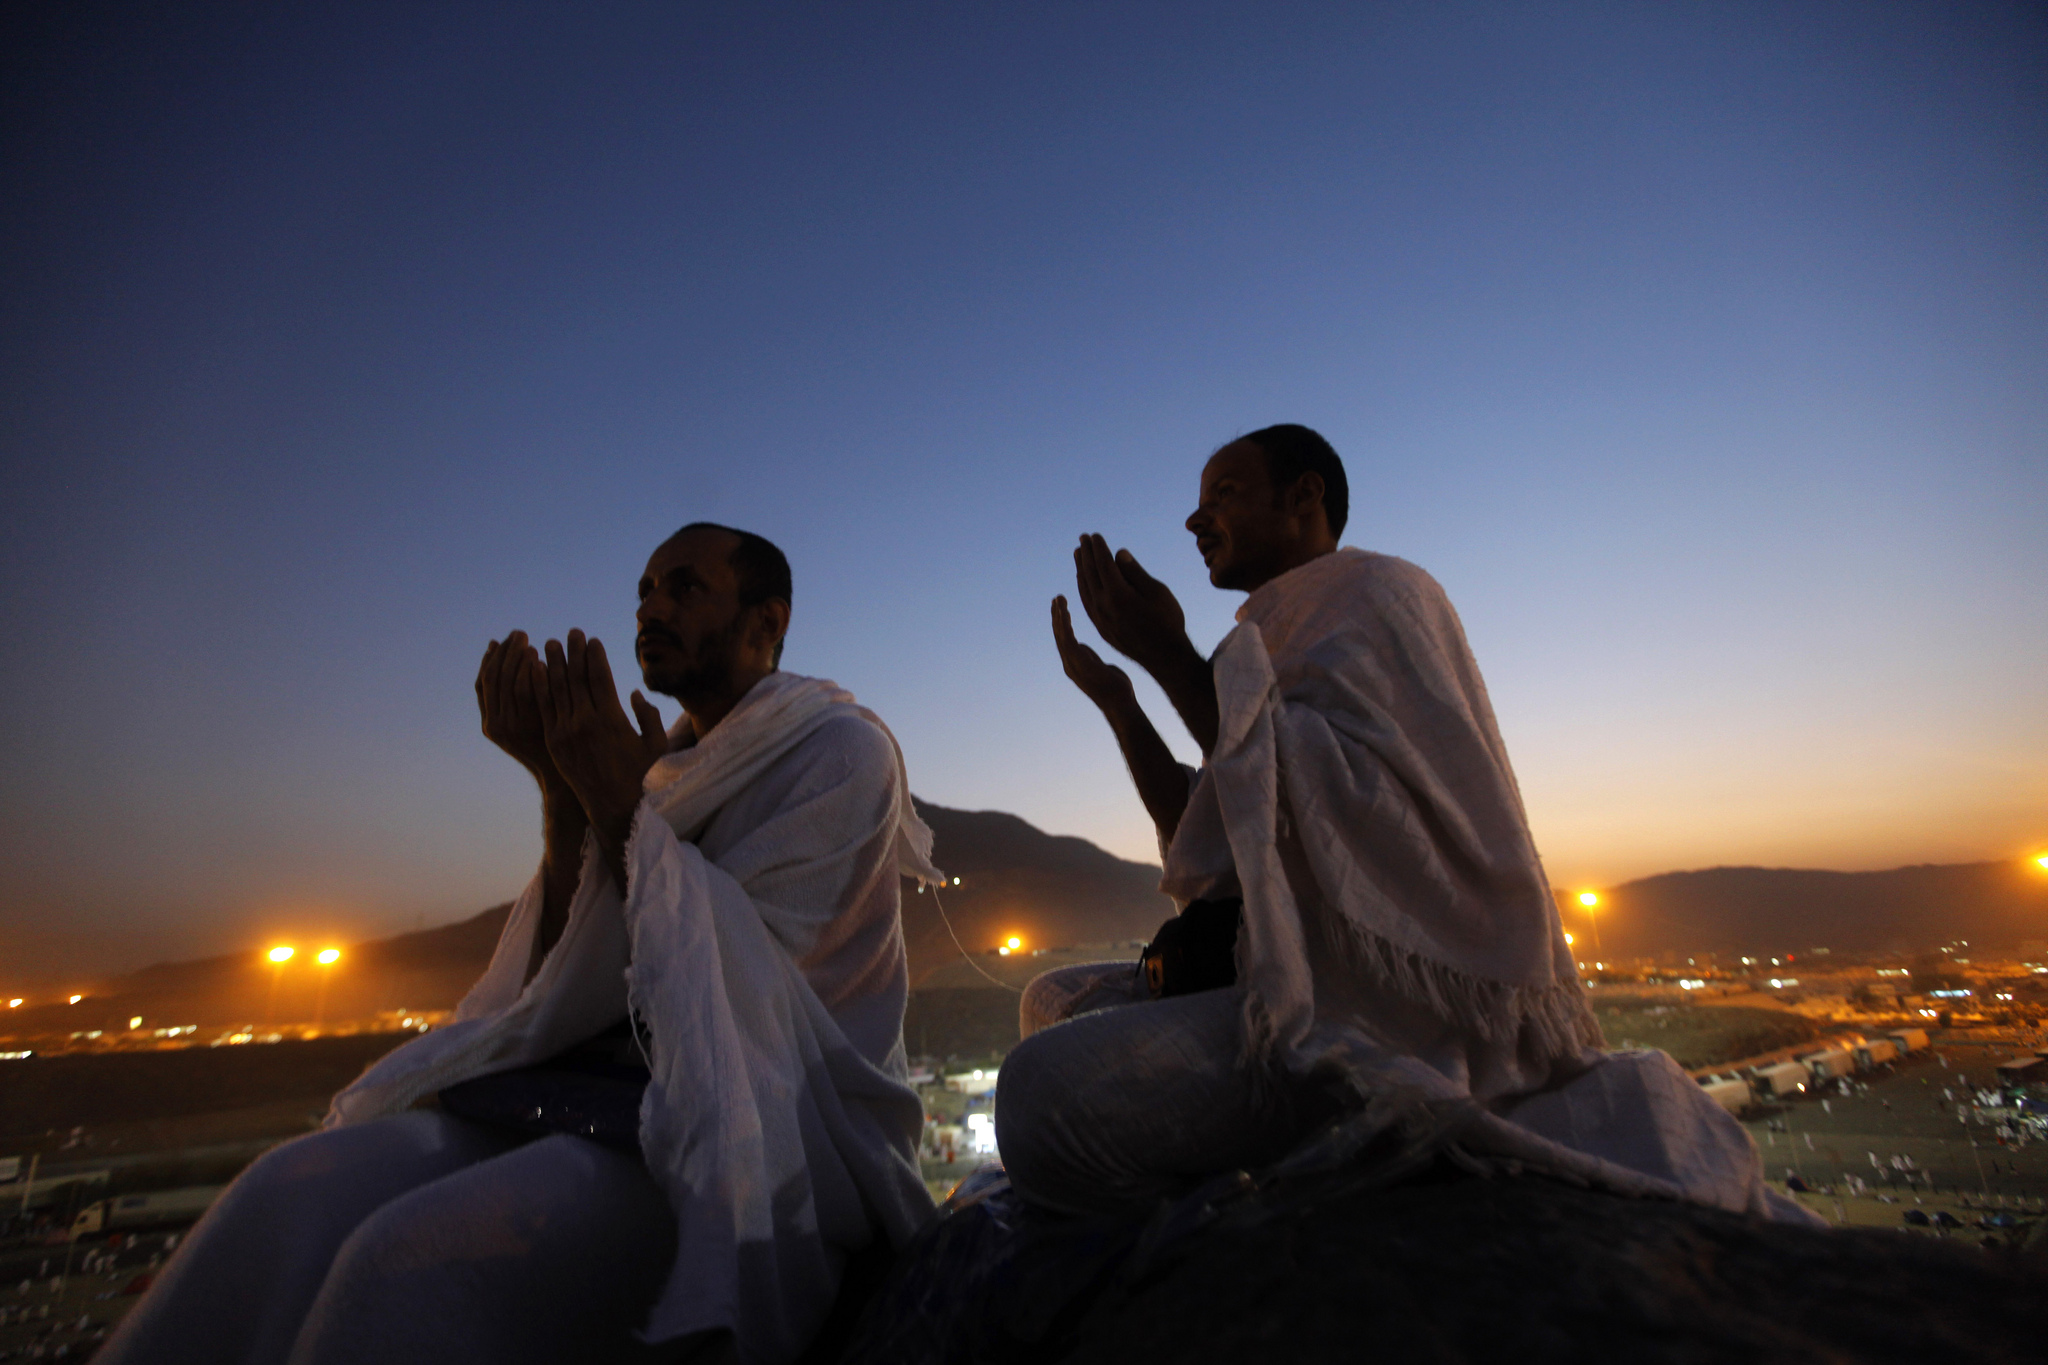 沙特阿拉伯圣城麦加附近,两位穆斯林朝圣者在阿拉法特山上虔诚祈祷